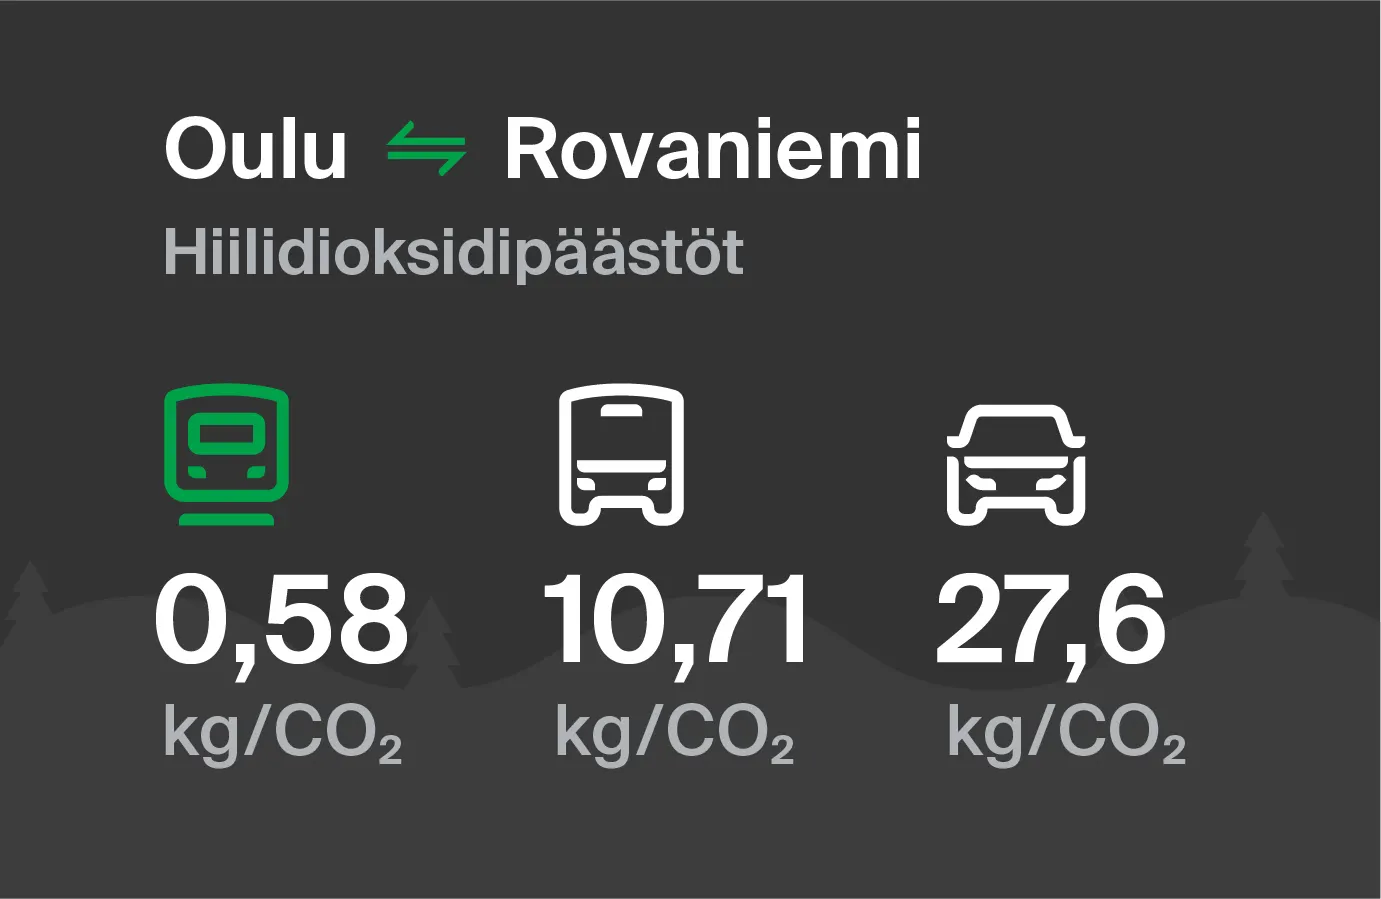 Koldioxidutsläpp från Uleåborg till Rovaniemi genom olika transportsätt: med tåg 0,58 kg/CO2, med buss 10,71 kg/CO2 och med bil 27,6 kg/CO2.